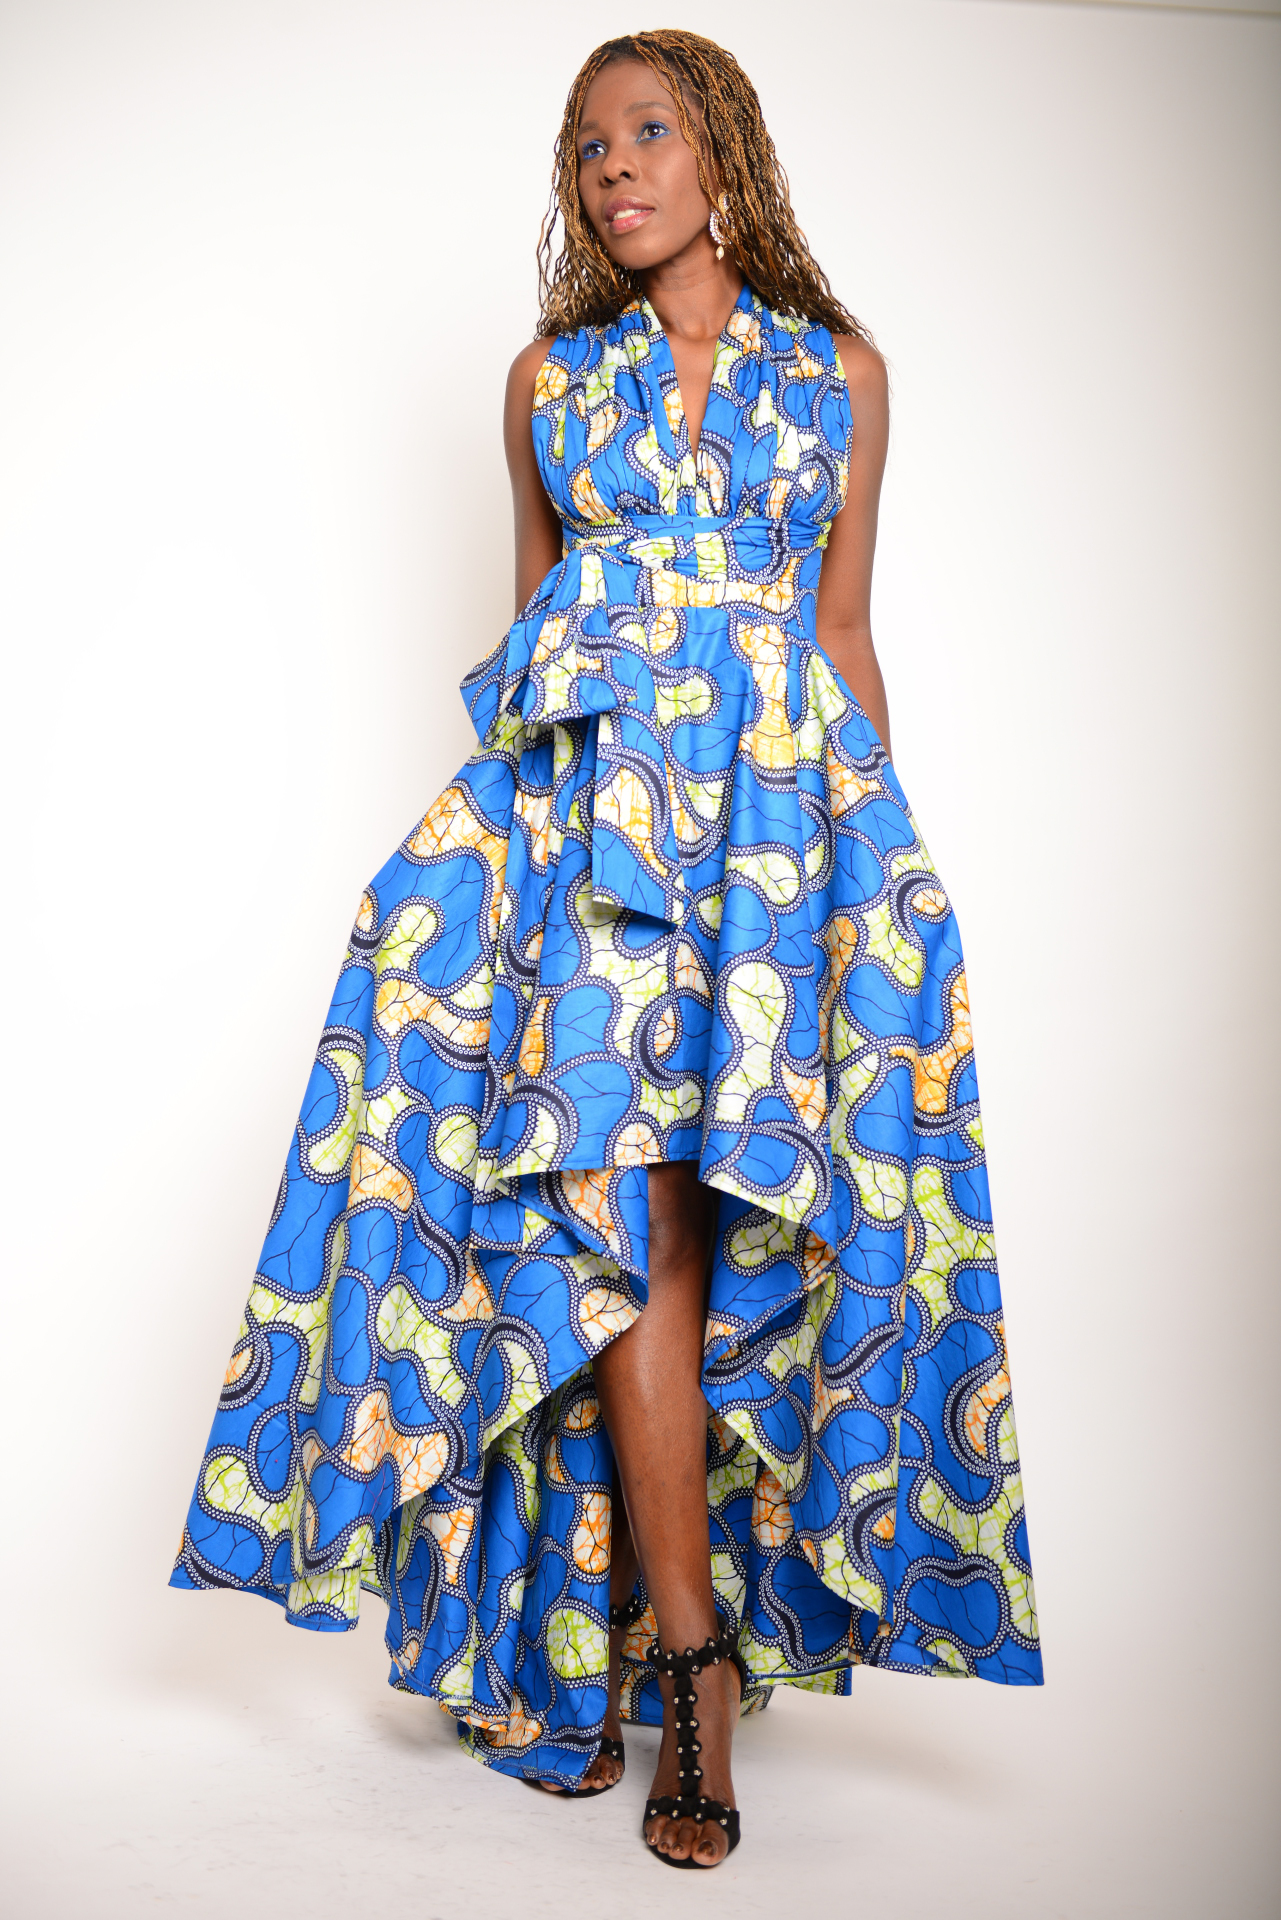 Afrikanische Mode – ein Modetrend erreicht Europa